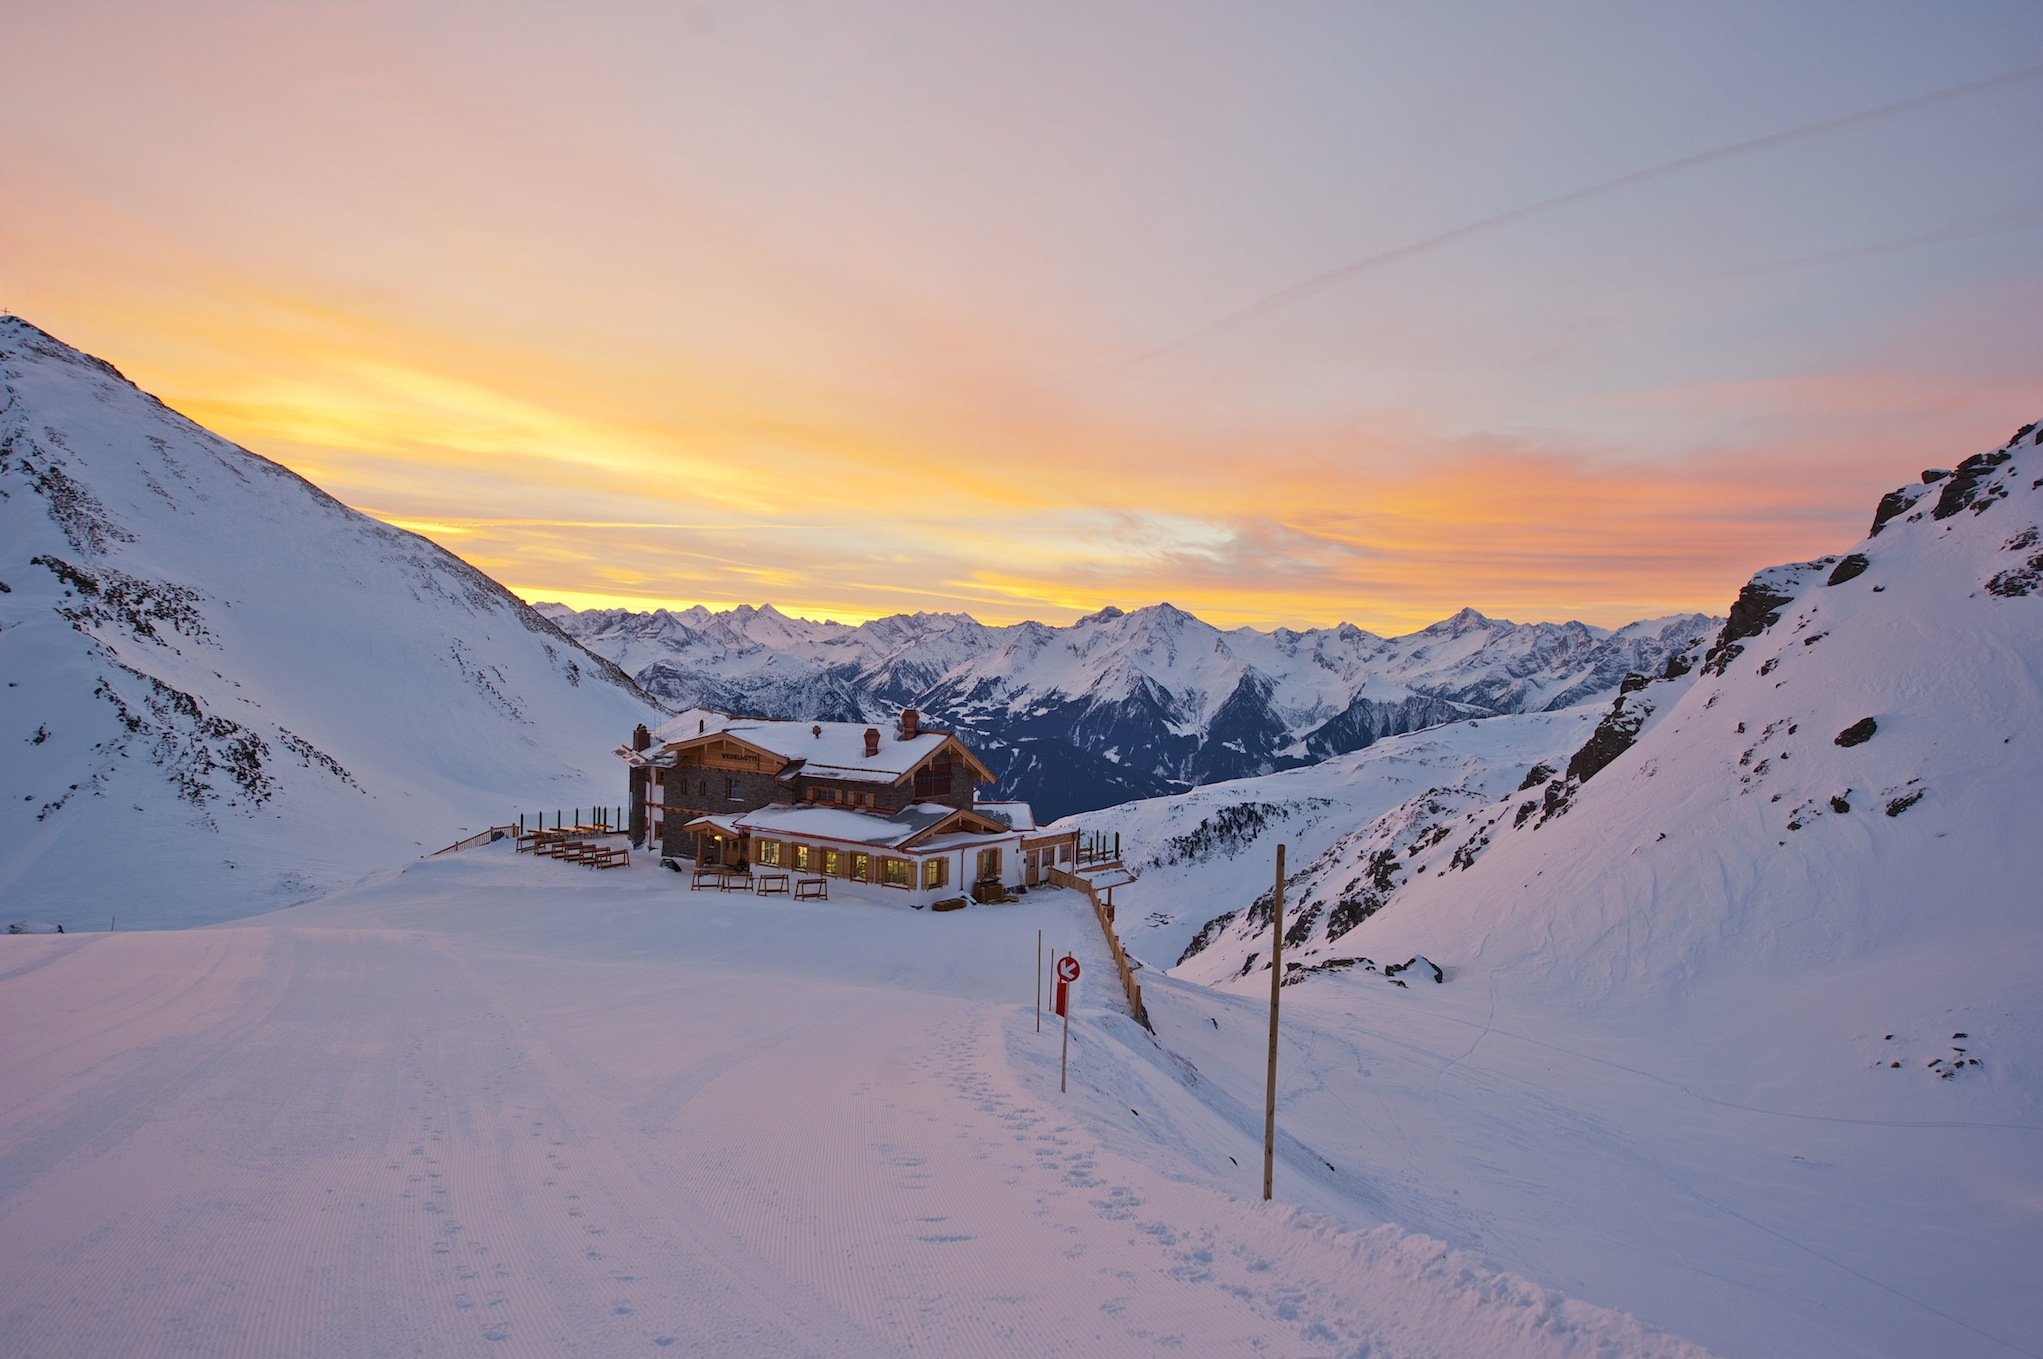 Event – 6. WINZER WEDELCUP 2017: Wintersport meets Weinverkostung – wenn Österreichs Top-Winzer zum Skirennen antreten